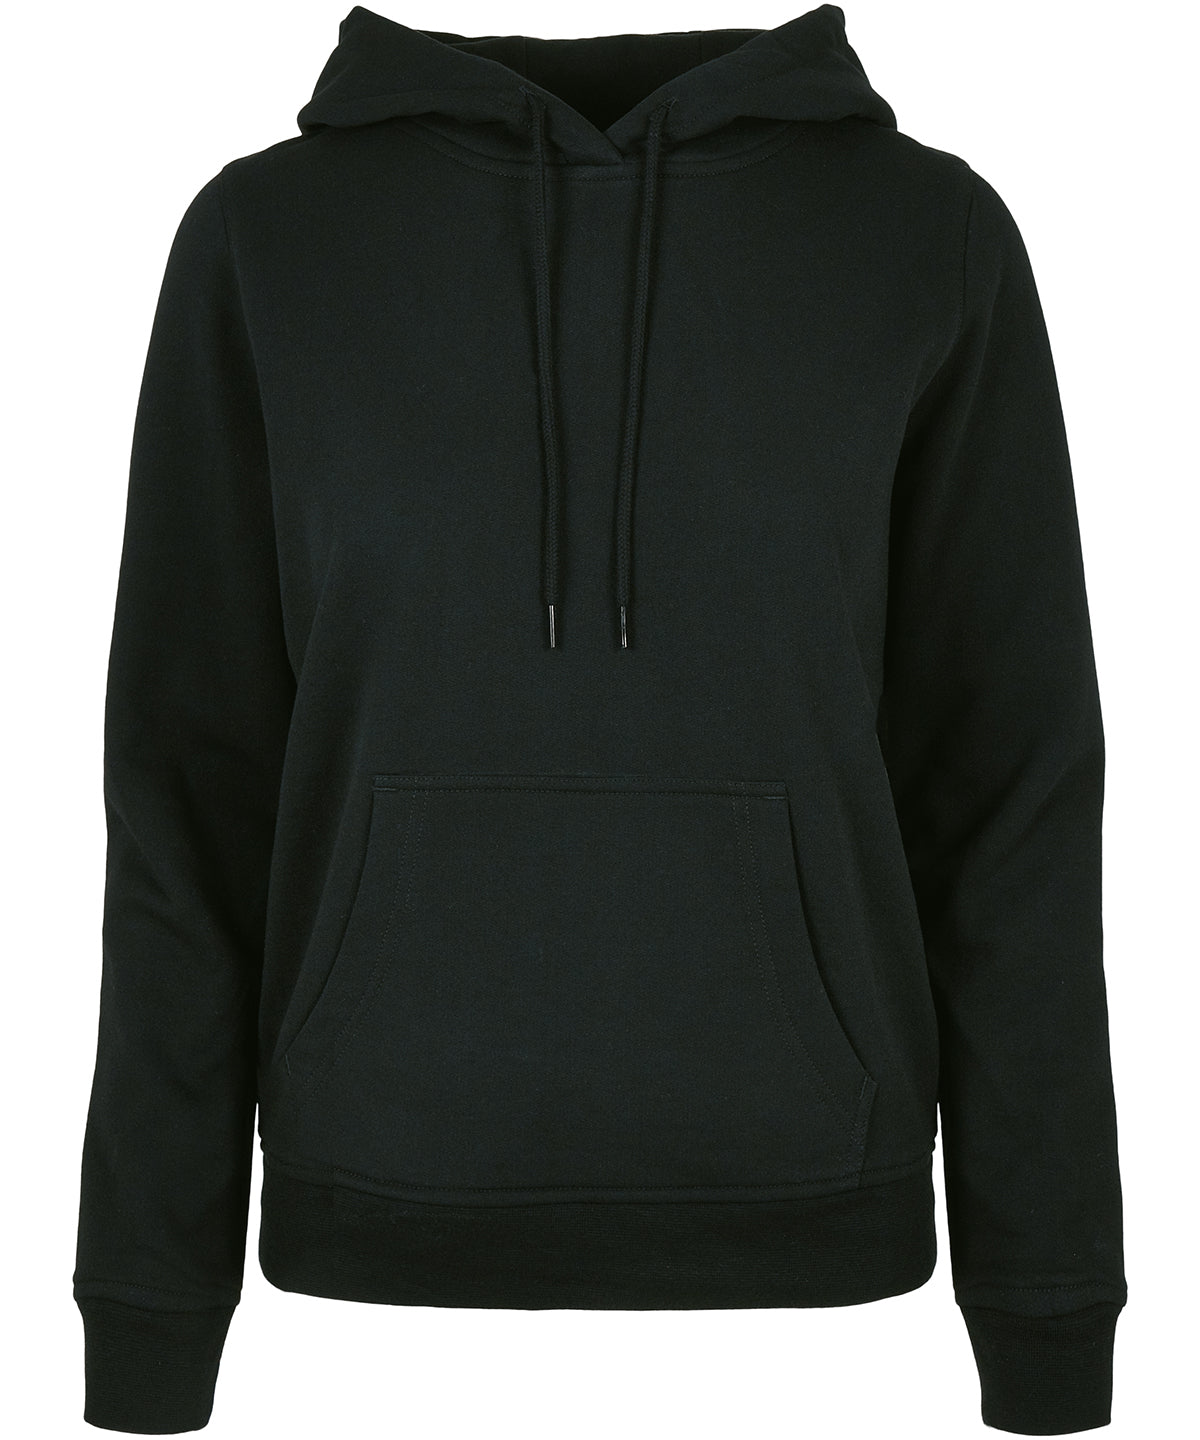 Personalised Hoodies - Black Build Your Brand Basic Women's basic hoodie